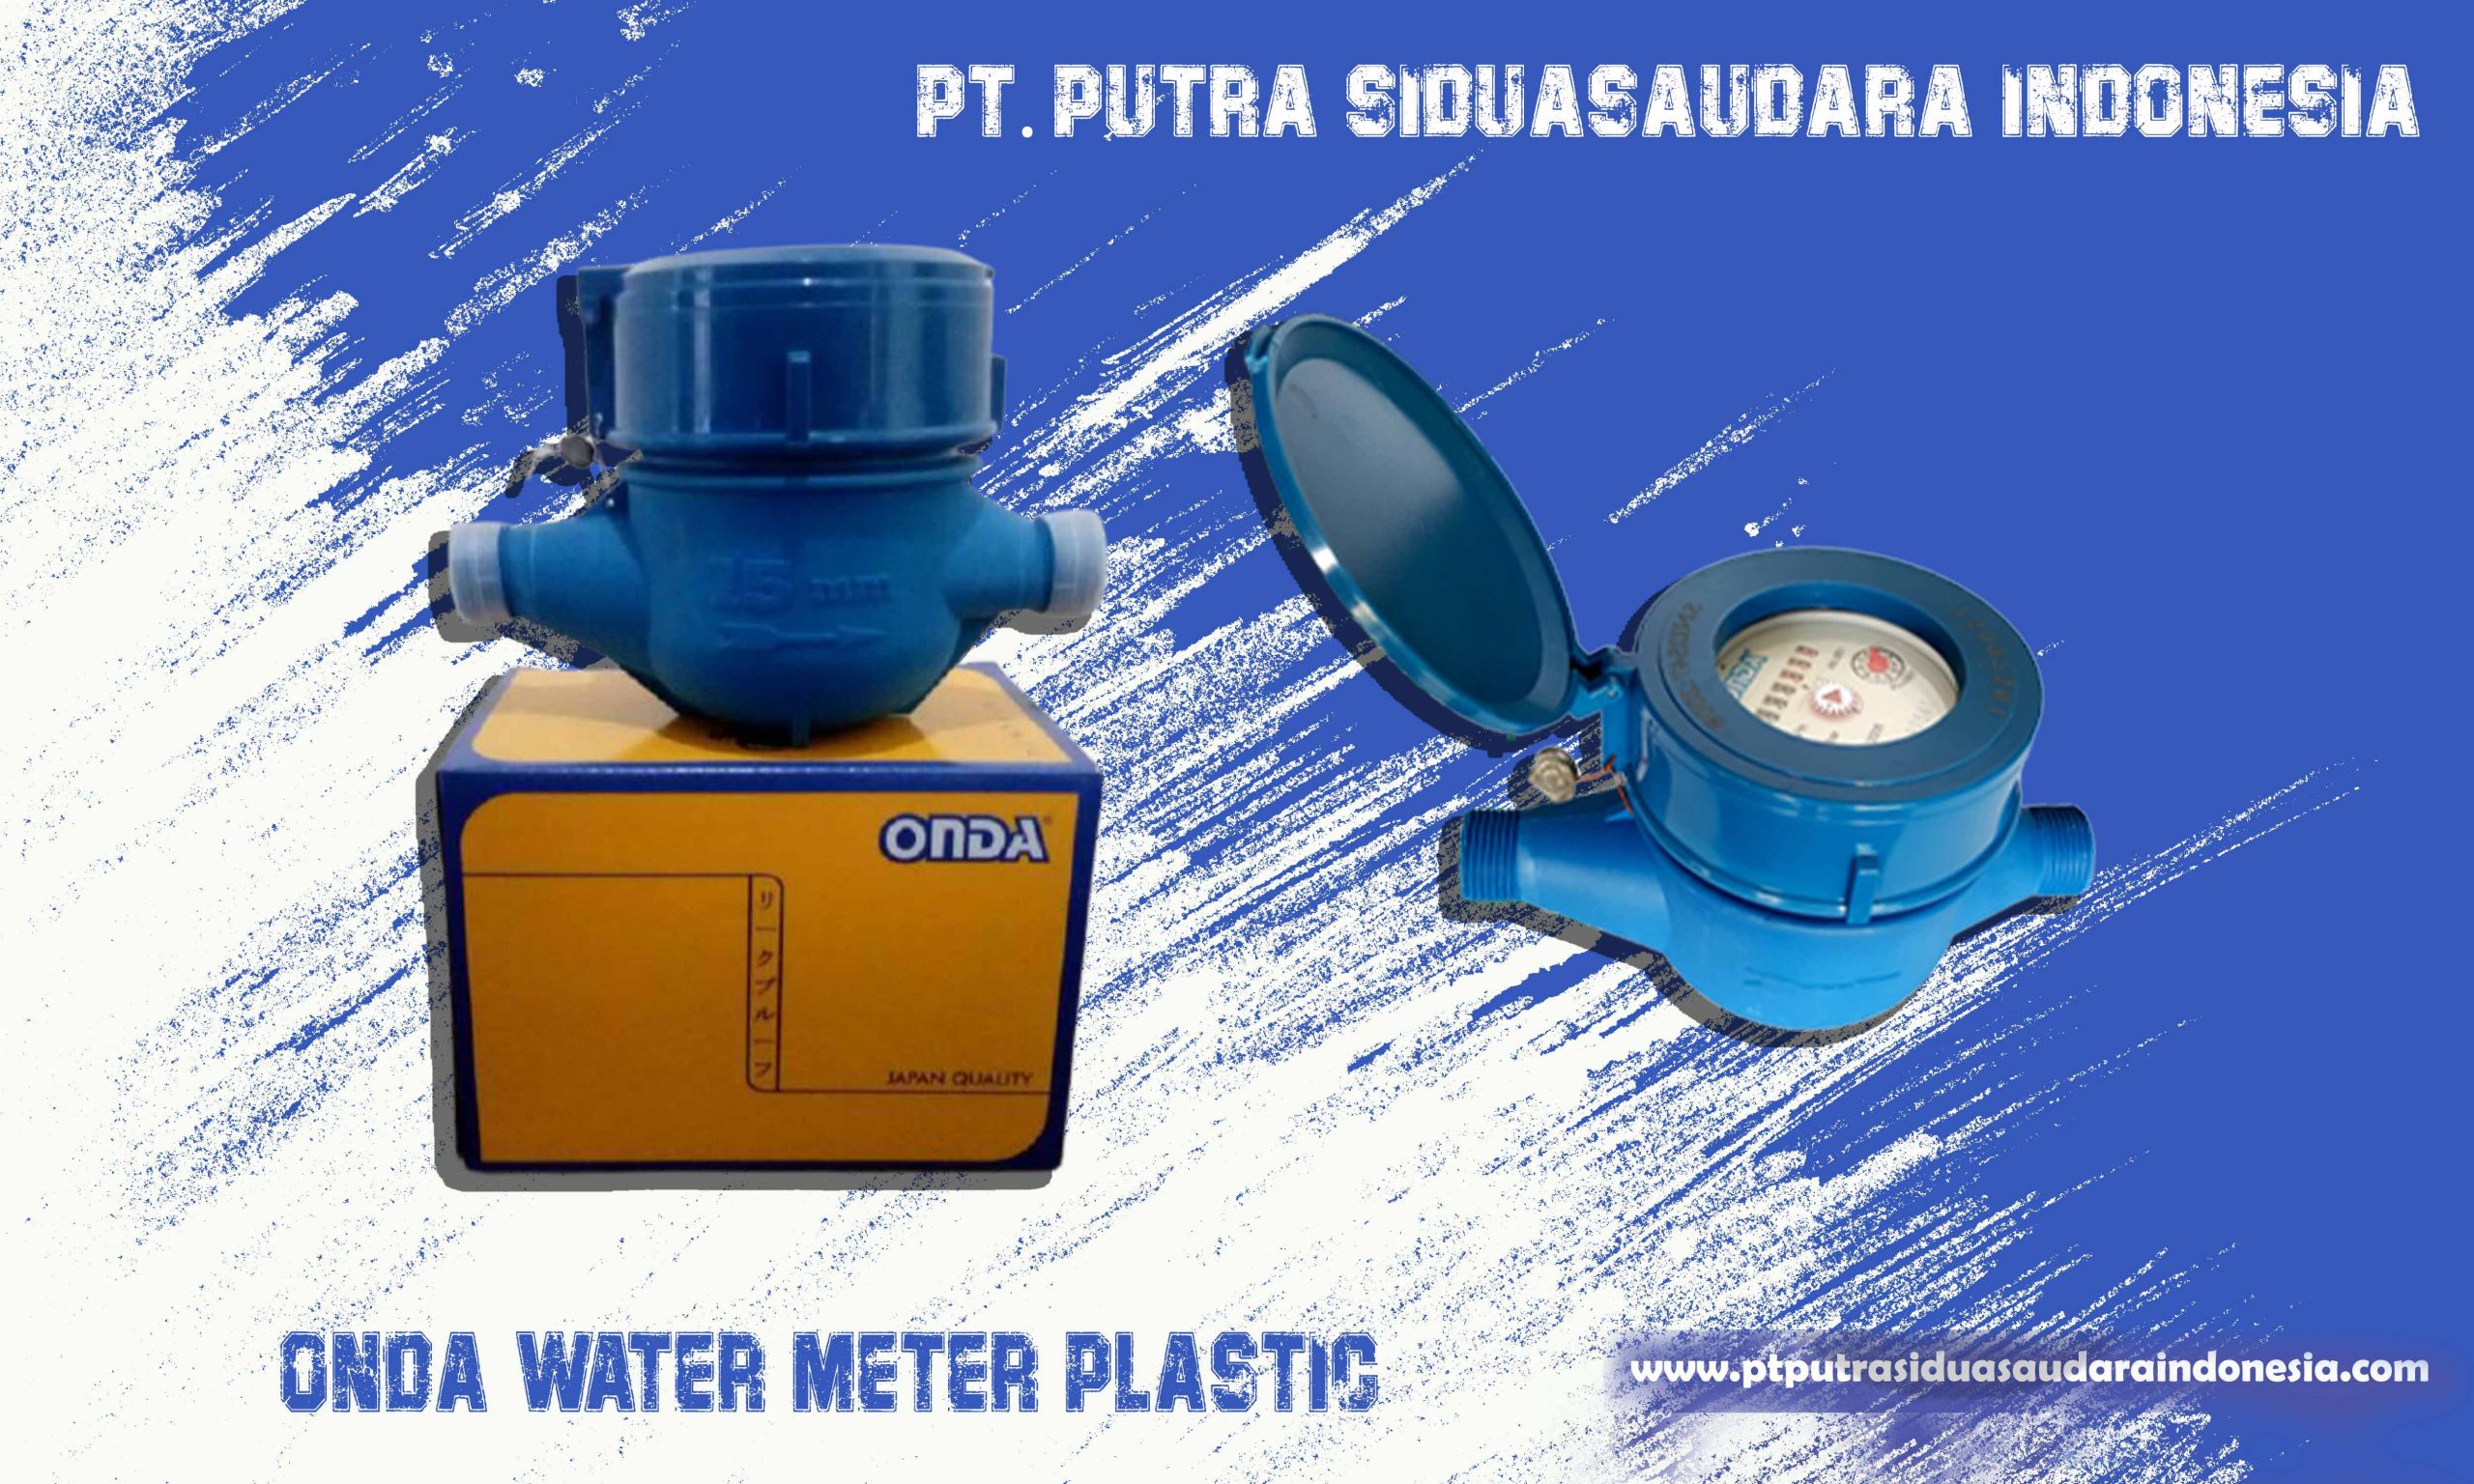 Water-meter-Categori-product-Onda-Plastik